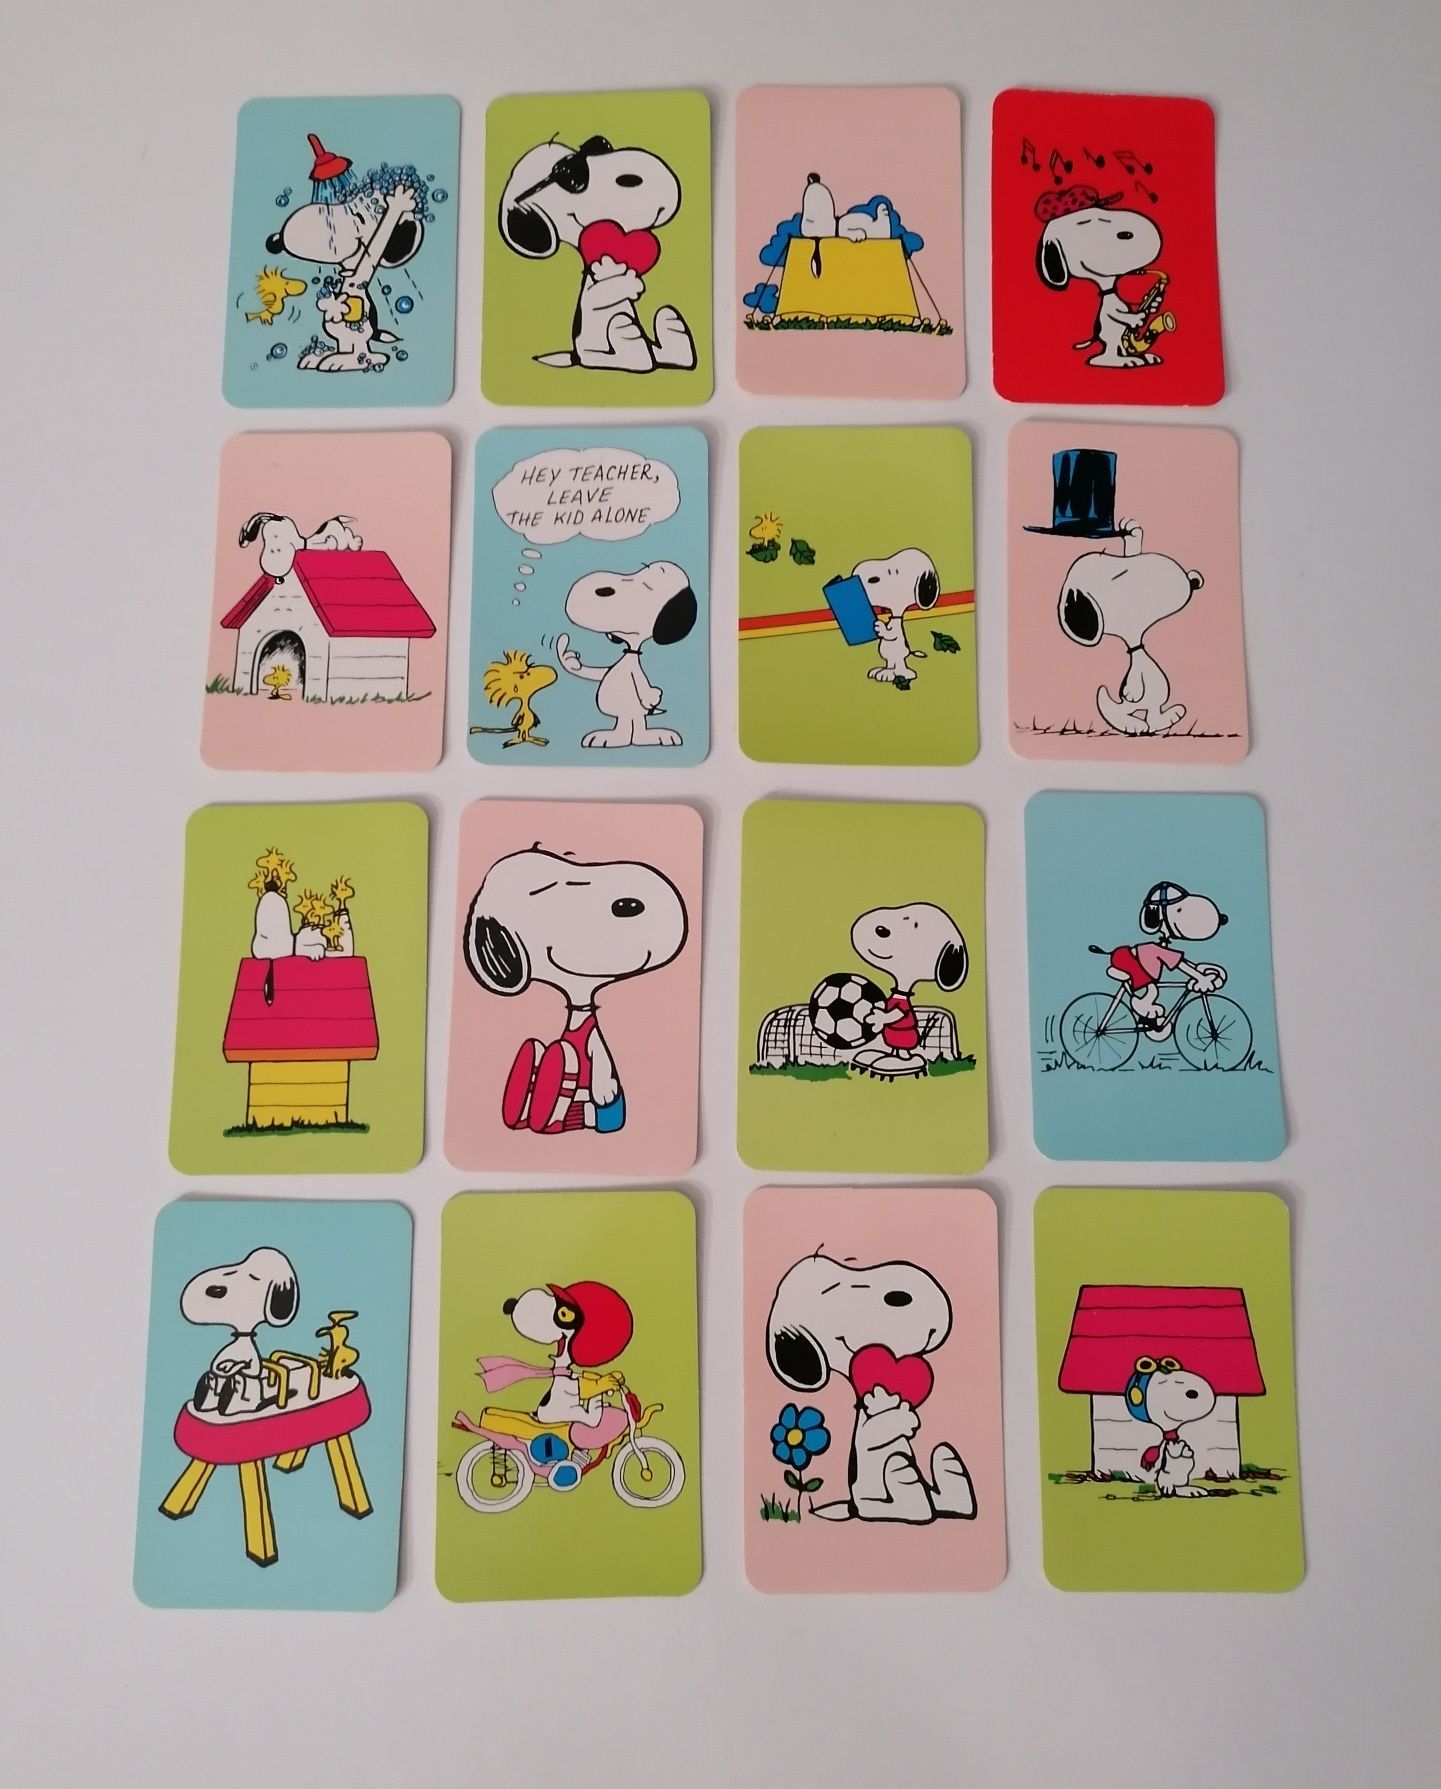 Série de 16 calendários de 1985 do Snoopy